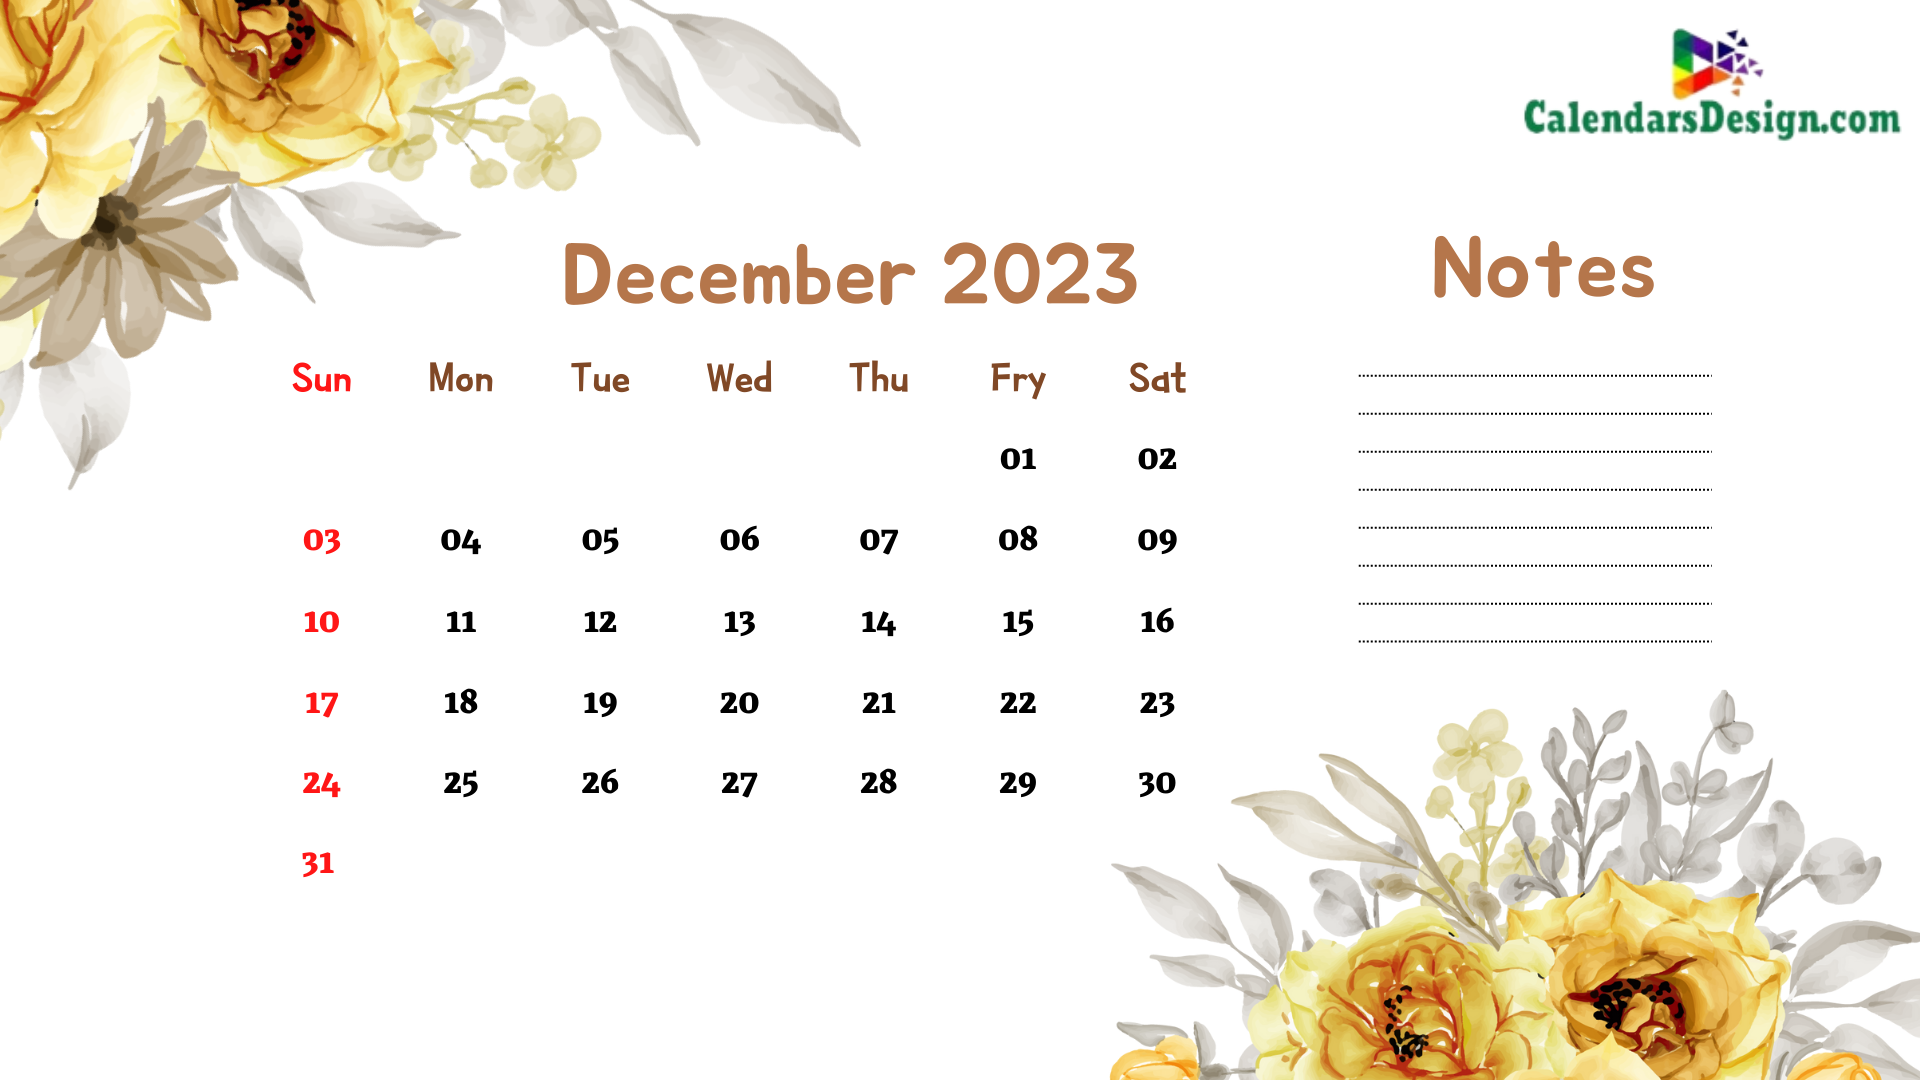 December 2023 Wall Calendar For Office